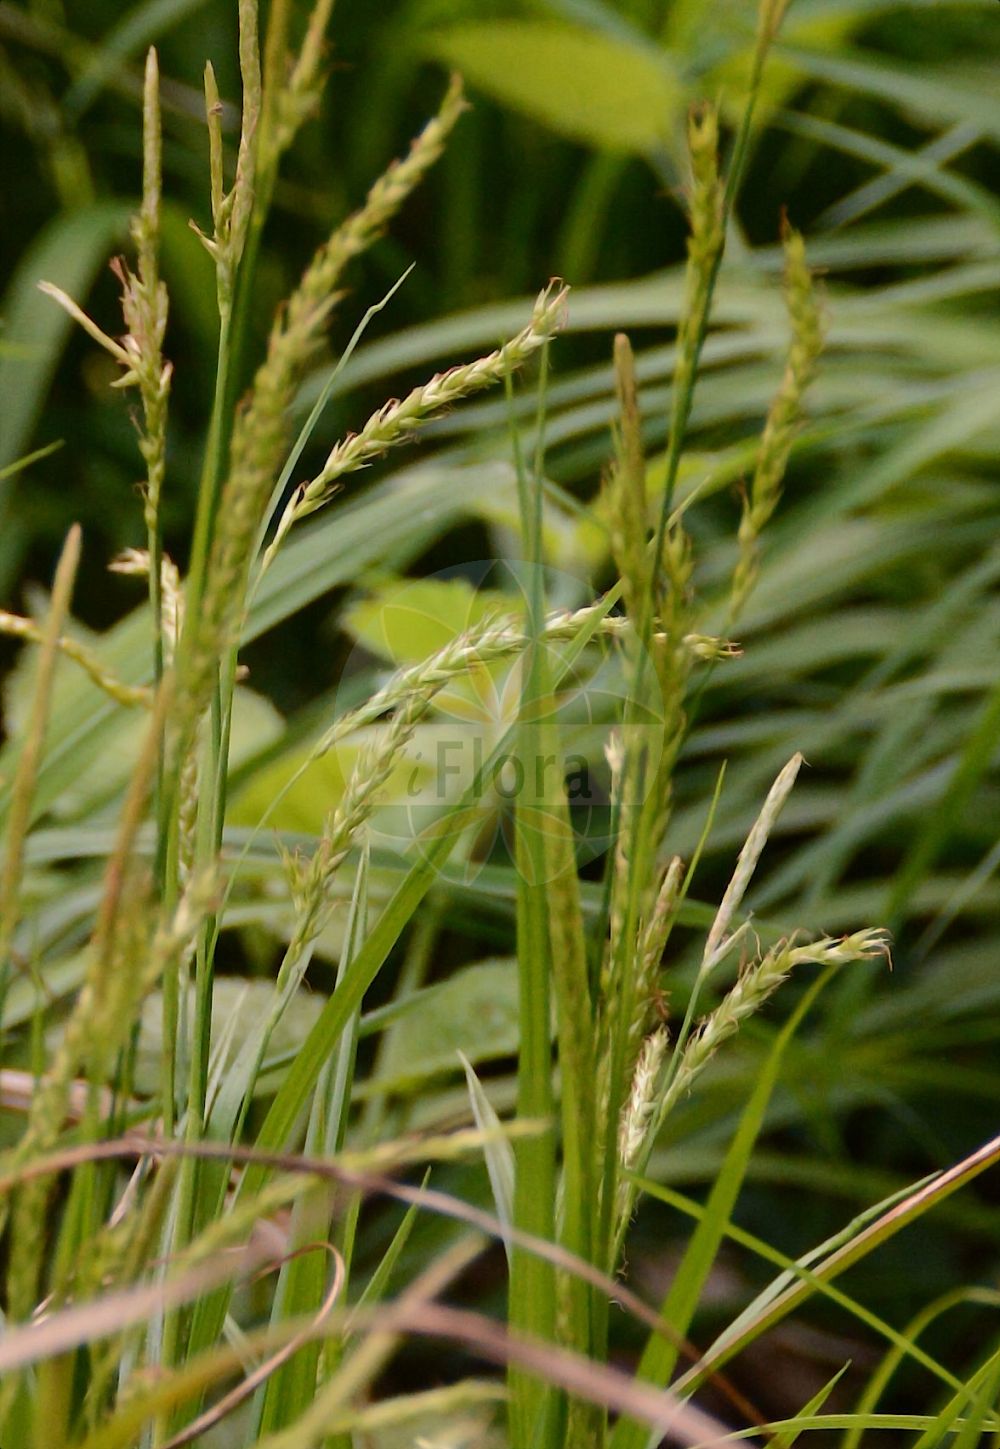 Foto von Carex laevigata (Glatte Segge - Smooth-stalked Sedge). Das Foto wurde in Bonn, Nordrhein-Westfalen, Deutschland aufgenommen. ---- Photo of Carex laevigata (Glatte Segge - Smooth-stalked Sedge). The picture was taken in Bonn, North Rhine-Westphalia, Germany.(Carex laevigata,Glatte Segge,Smooth-stalked Sedge,Carex laevigata,Carex welwitschii,Glatte Segge,Smooth-stalked Sedge,Smooth Sedge,Carex,Segge,Sedge,Cyperaceae,Sauergräser,Sedge family)